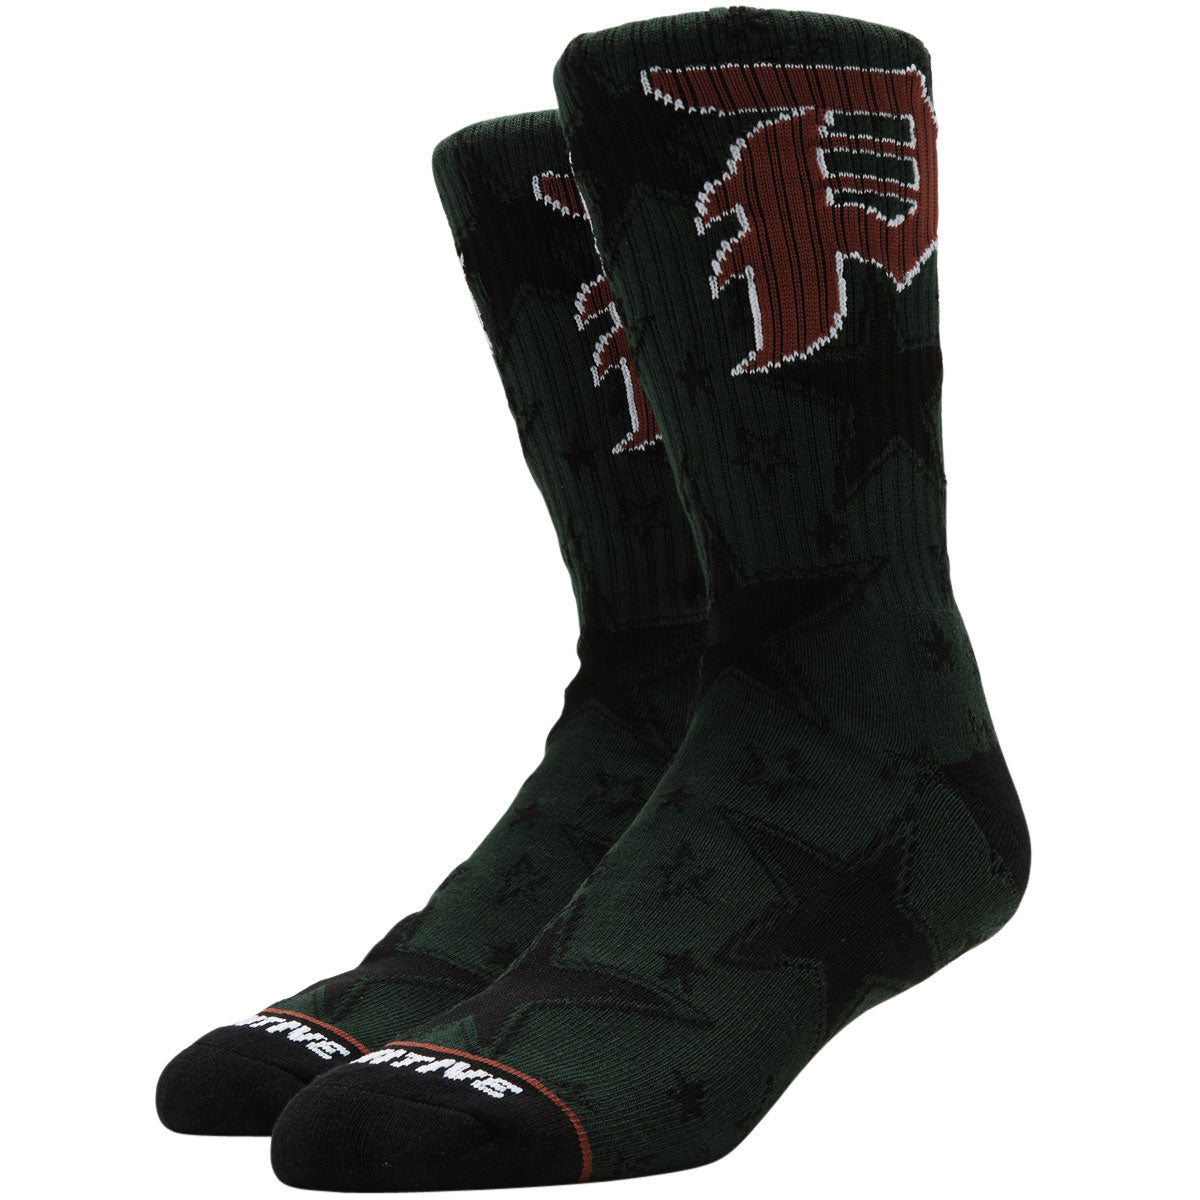 Primitive All-Star Socks - Green image 1